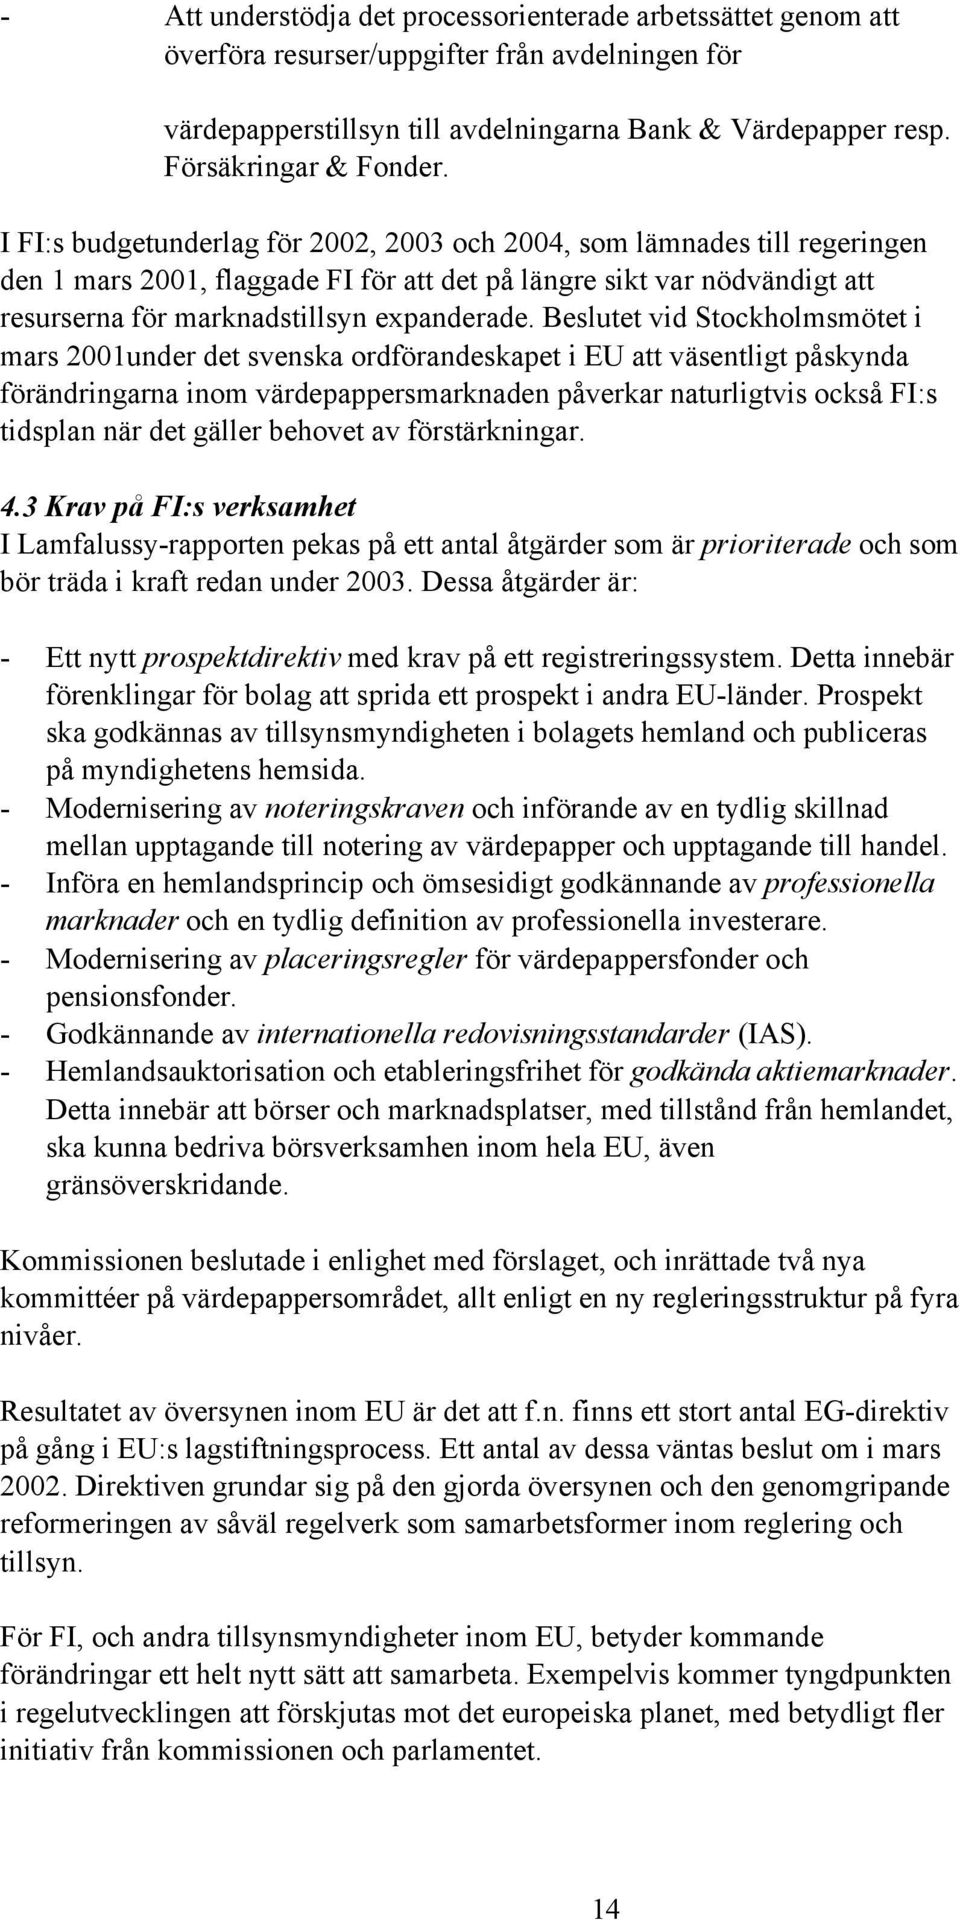 Beslutet vid Stockholmsmötet i mars 2001under det svenska ordförandeskapet i EU att väsentligt påskynda förändringarna inom värdepappersmarknaden påverkar naturligtvis också FI:s tidsplan när det